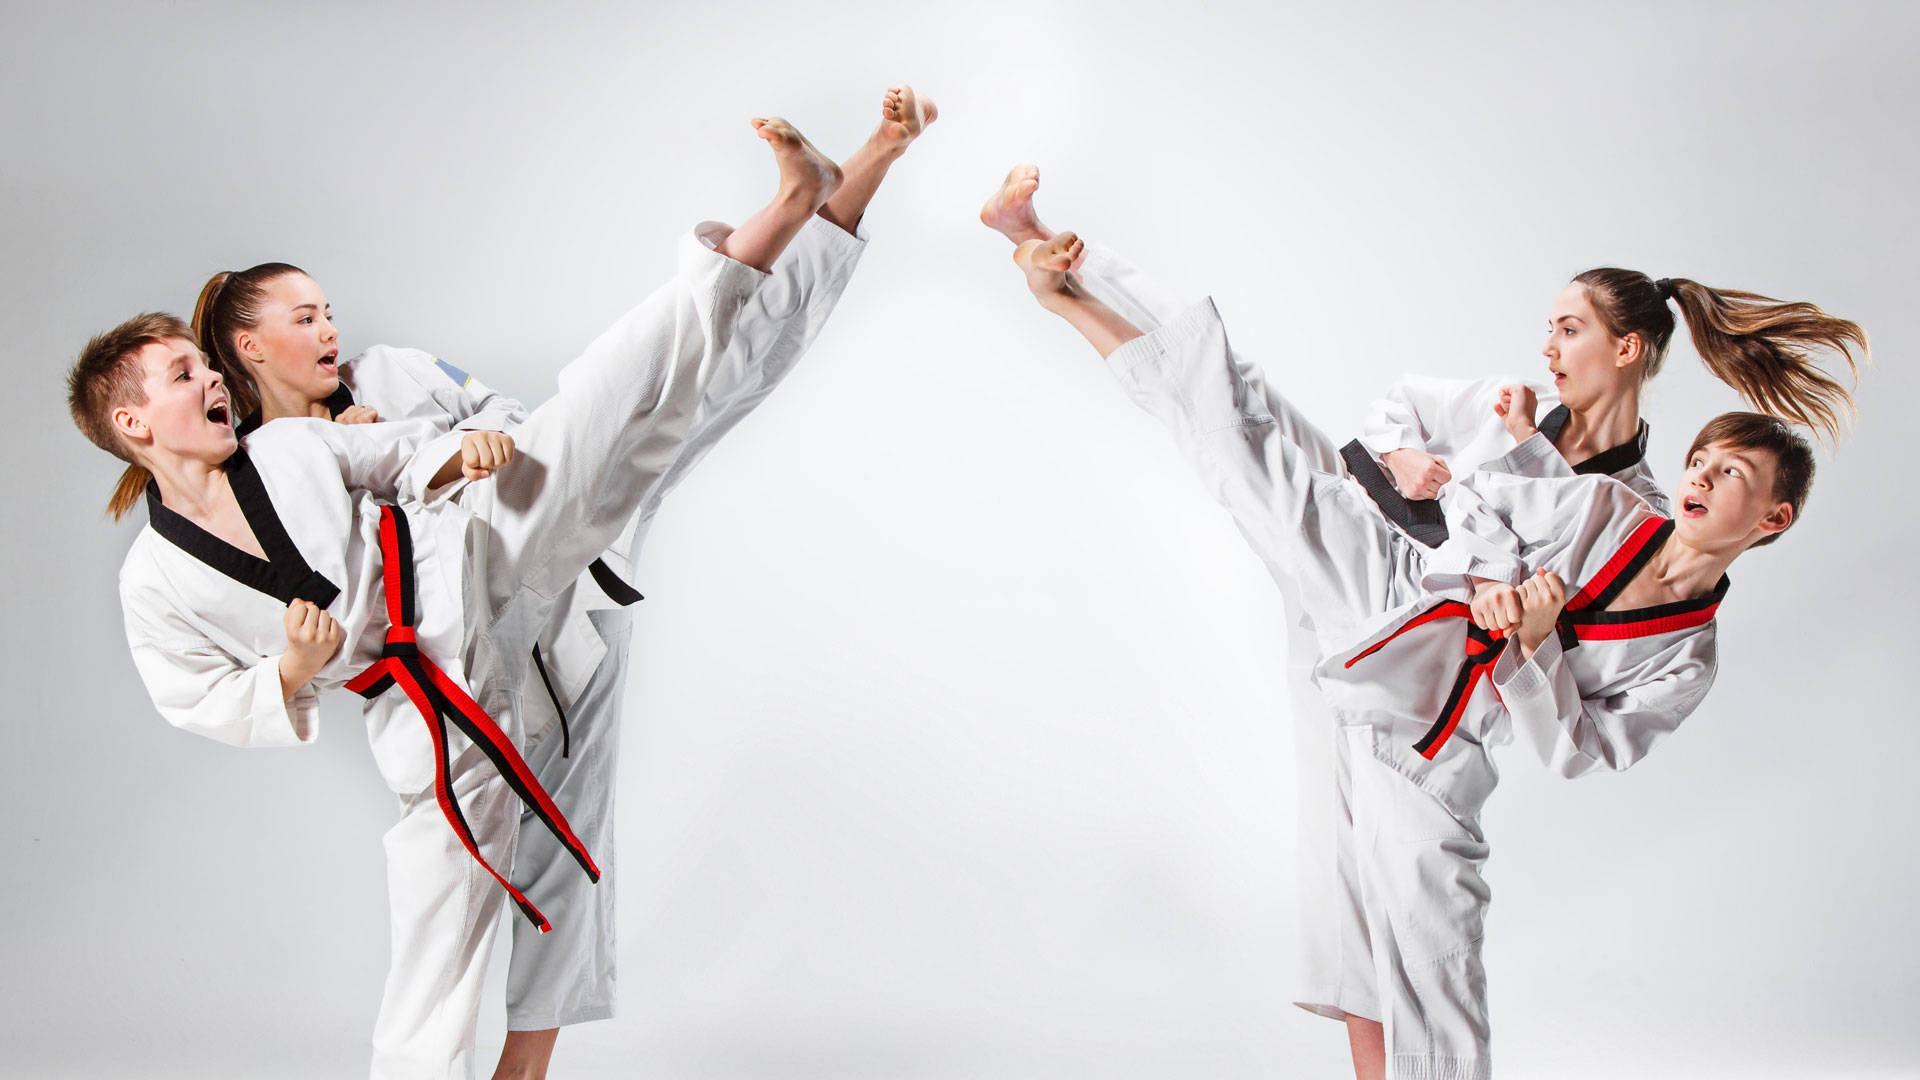 Hình ảnh Nền Tuyển Sinh Taekwondo  Nền PSD Tải xuống miễn phí  Pikbest